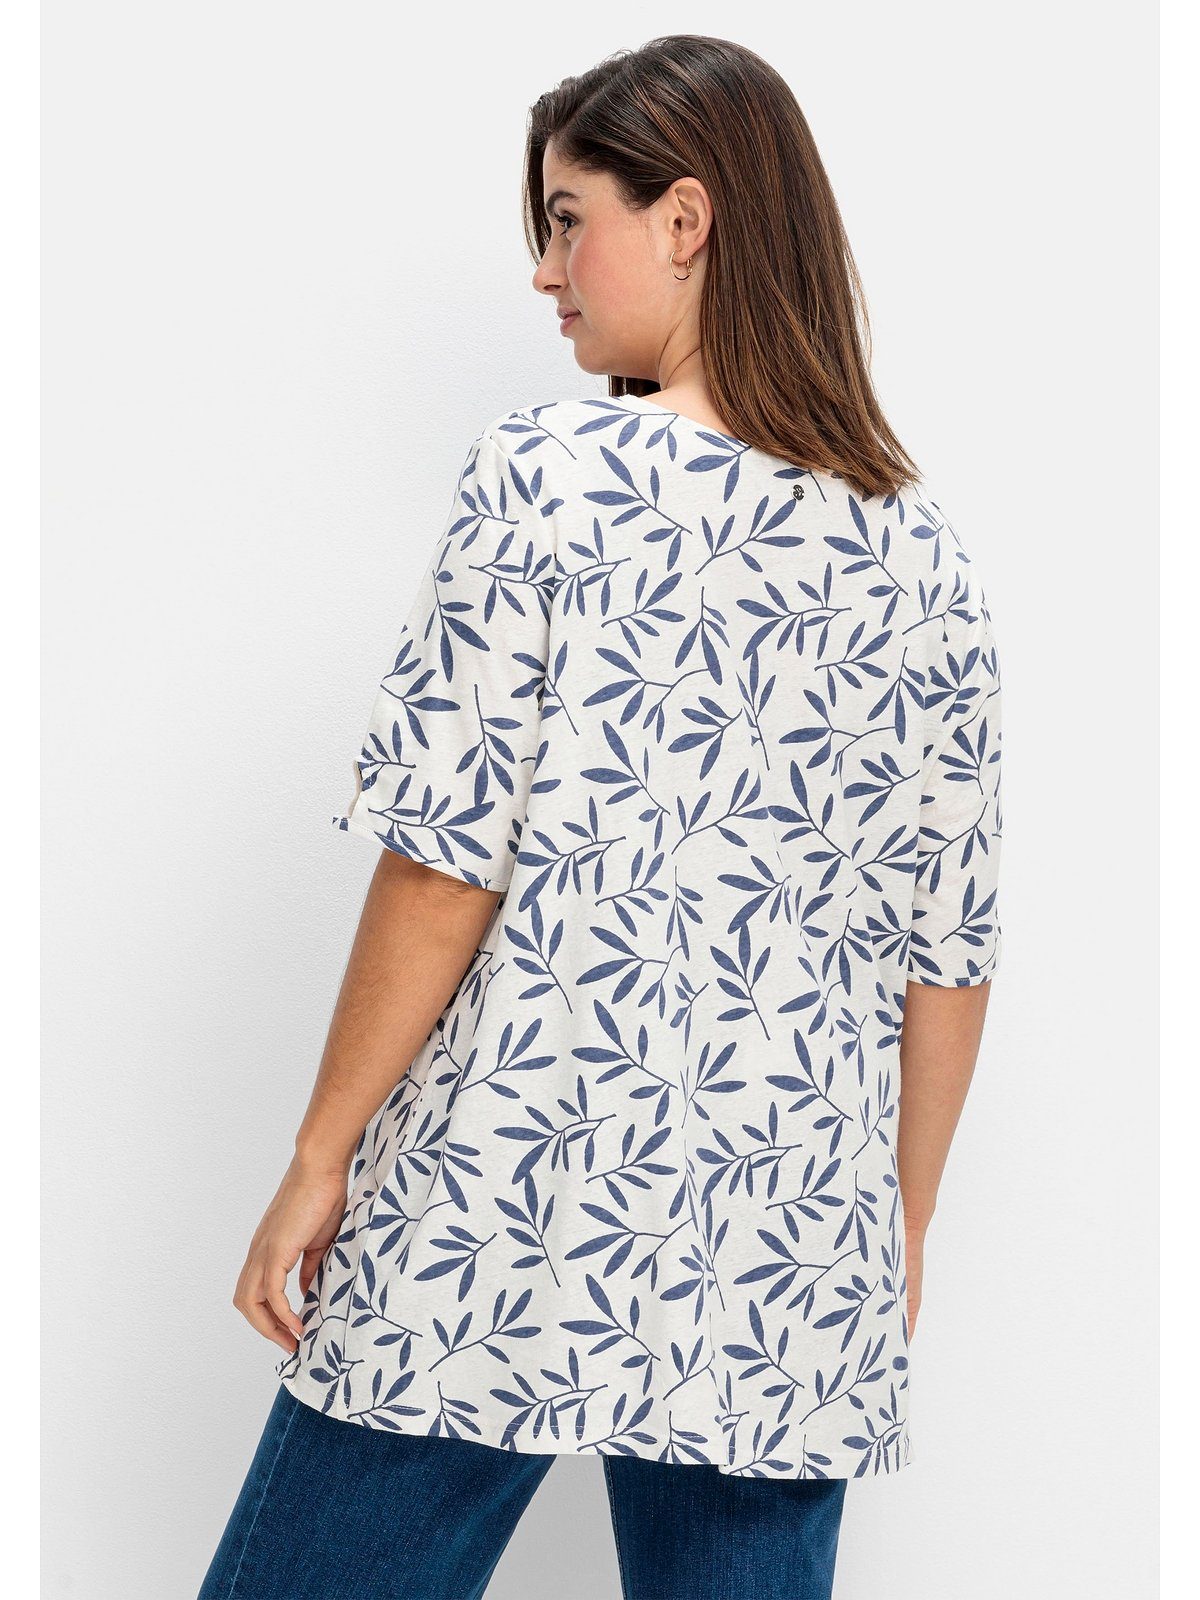 gemustert Blätterprint, im T-Shirt Leinen-Mix Große Sheego offwhite mit Größen